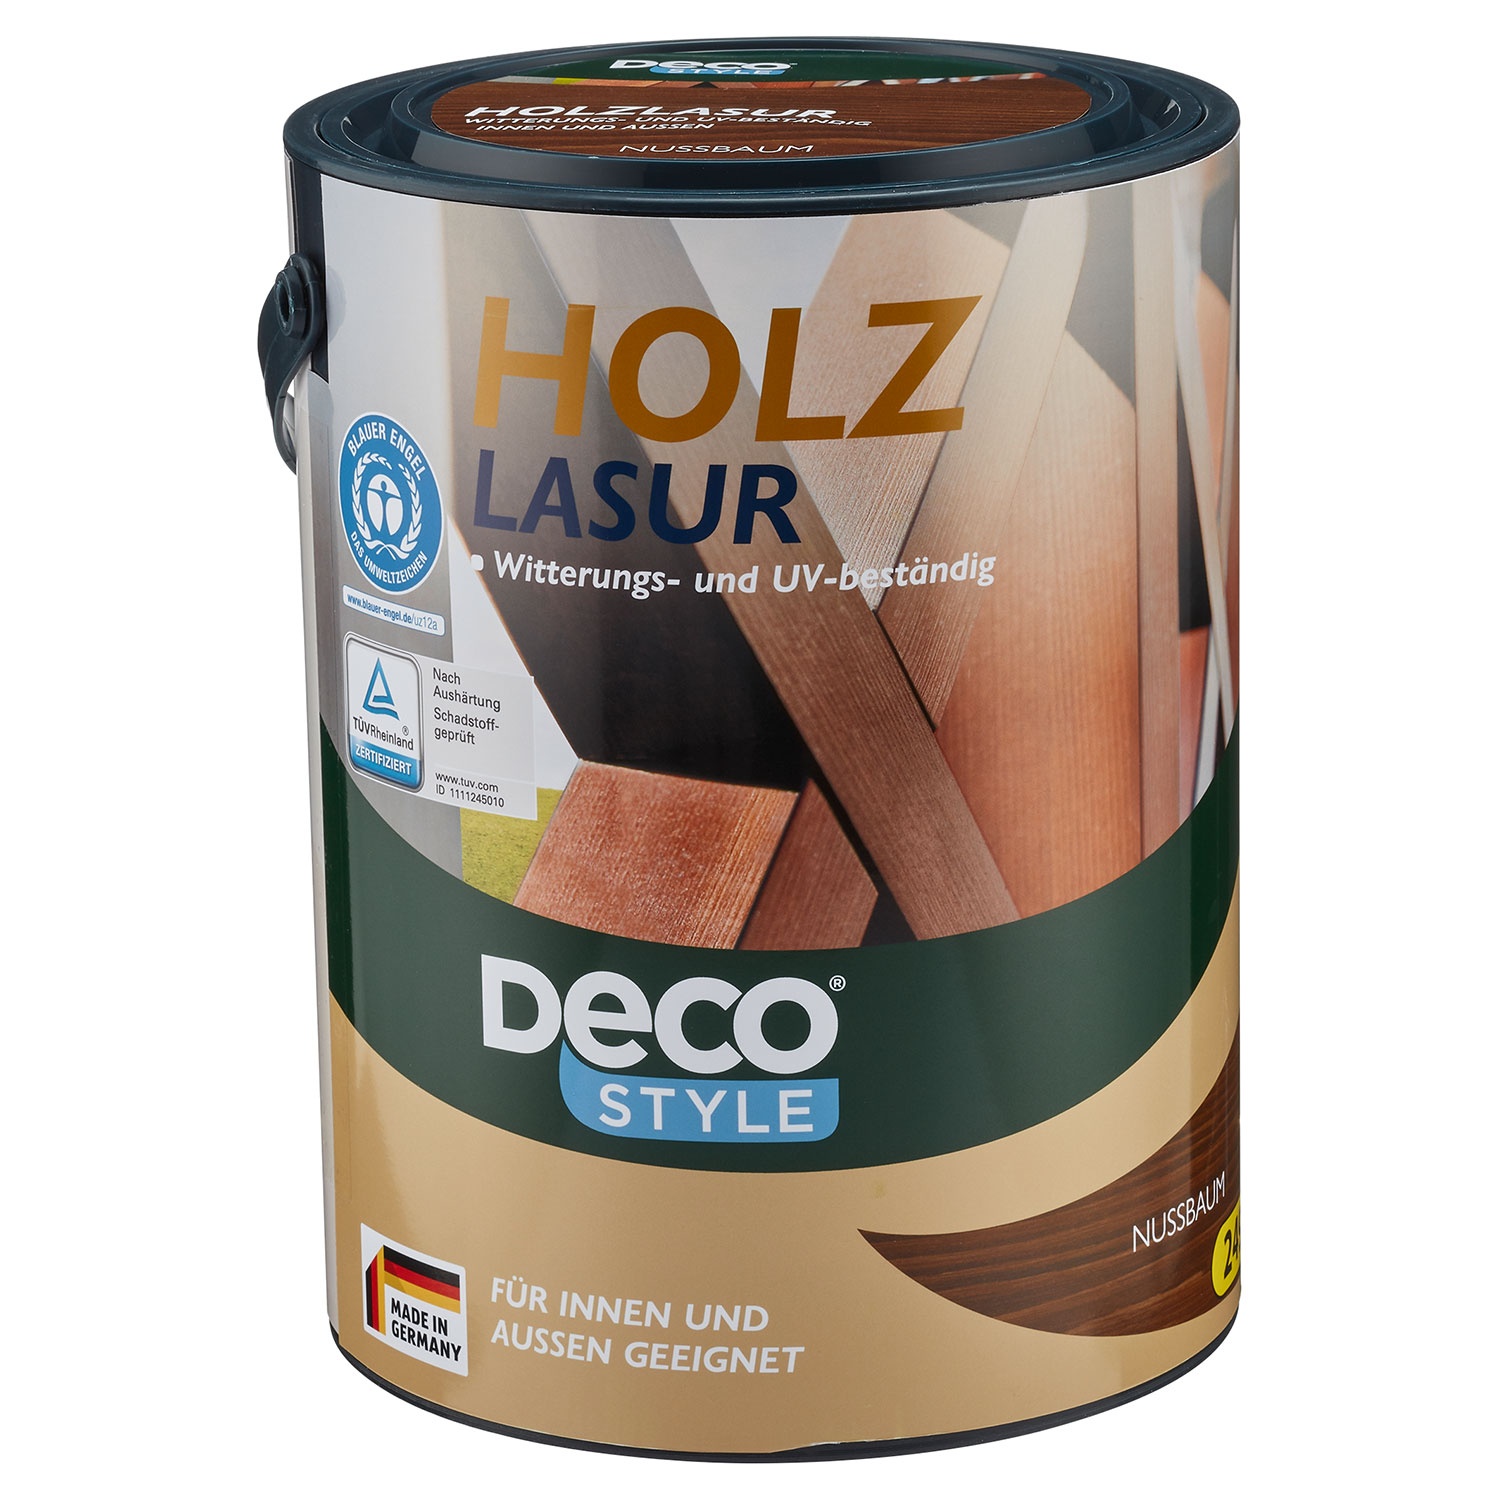 DECO STYLE® Holzlasur 5 l